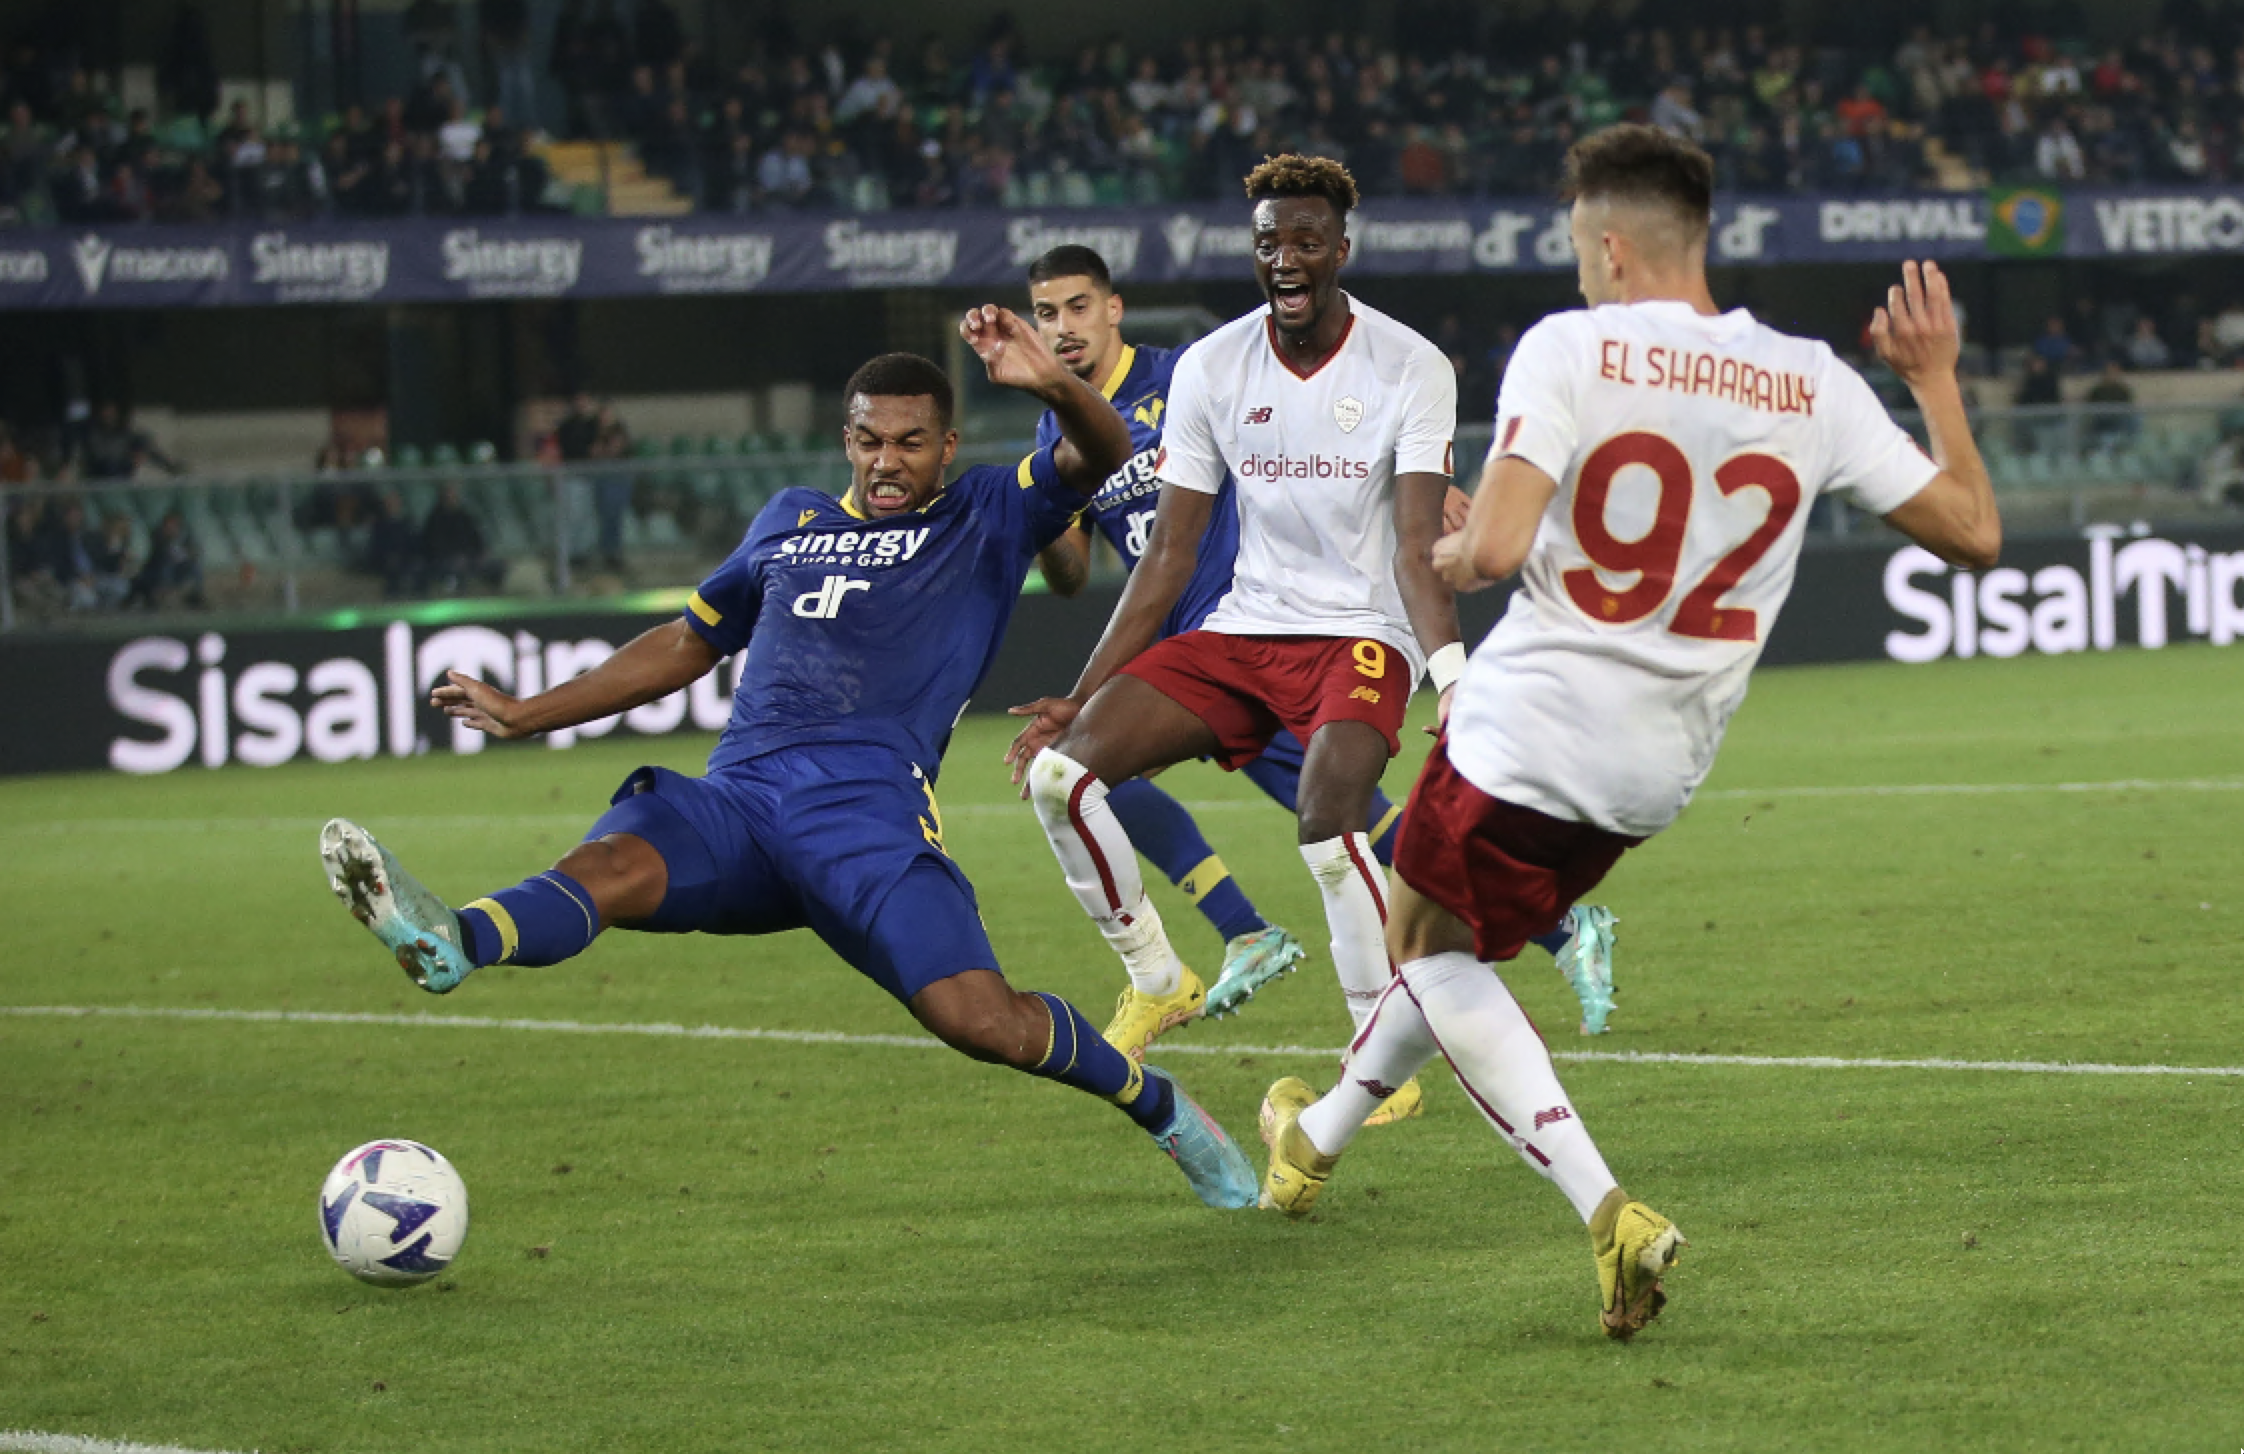 El Shaarawy scoring the 3-1 goal in Verona